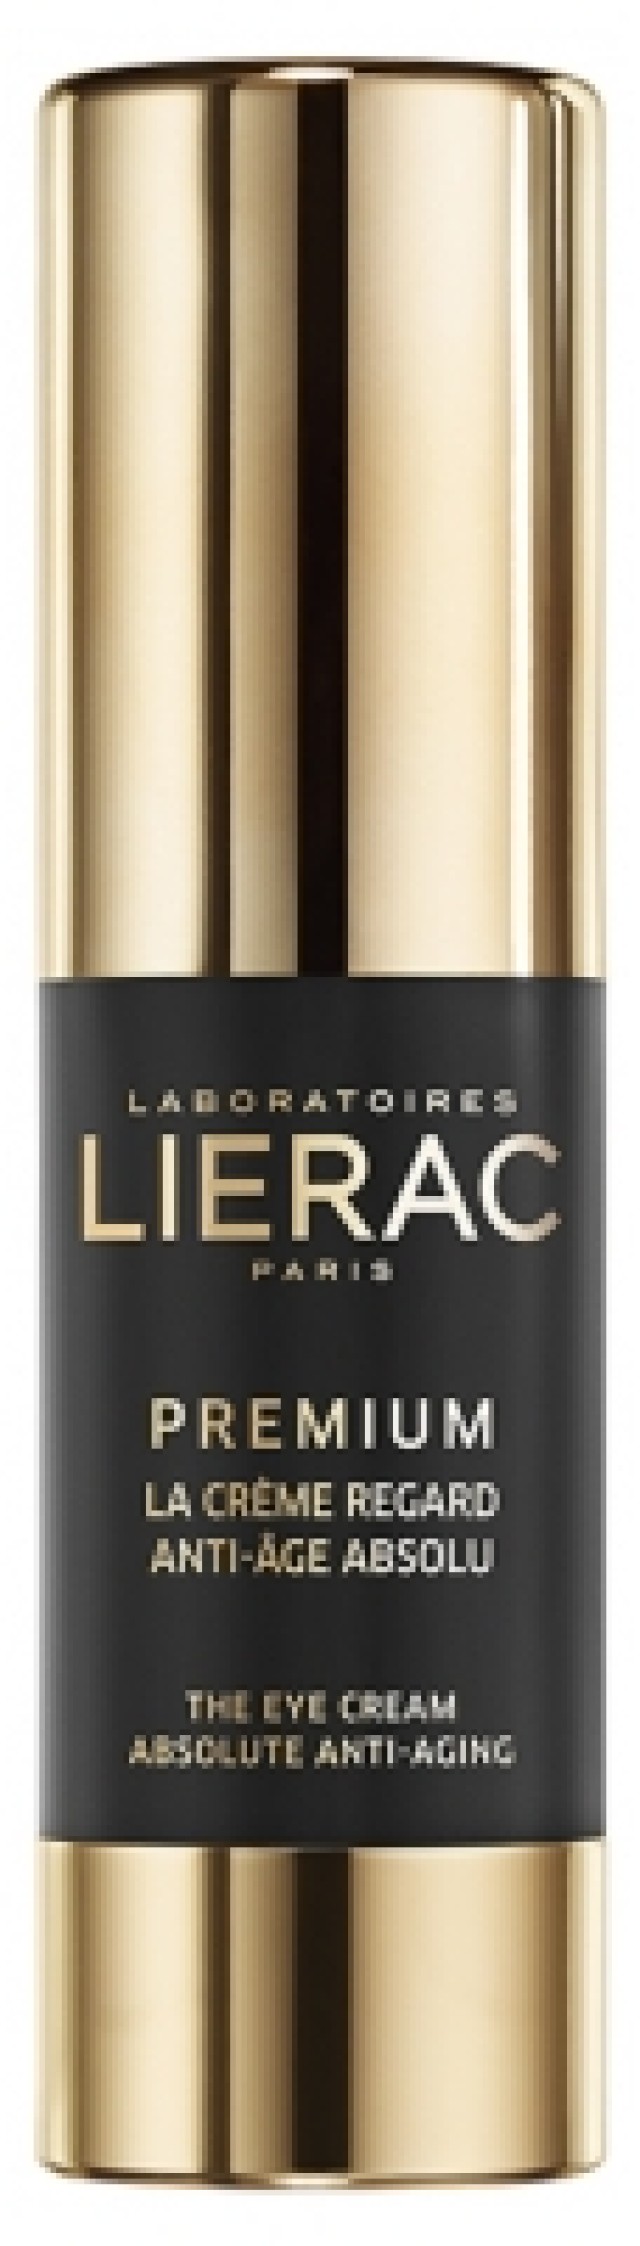 Lierac Premium Yeux Anti-Age Absolu Αντιγηραντική Κρέμα Ματιών, 15ml